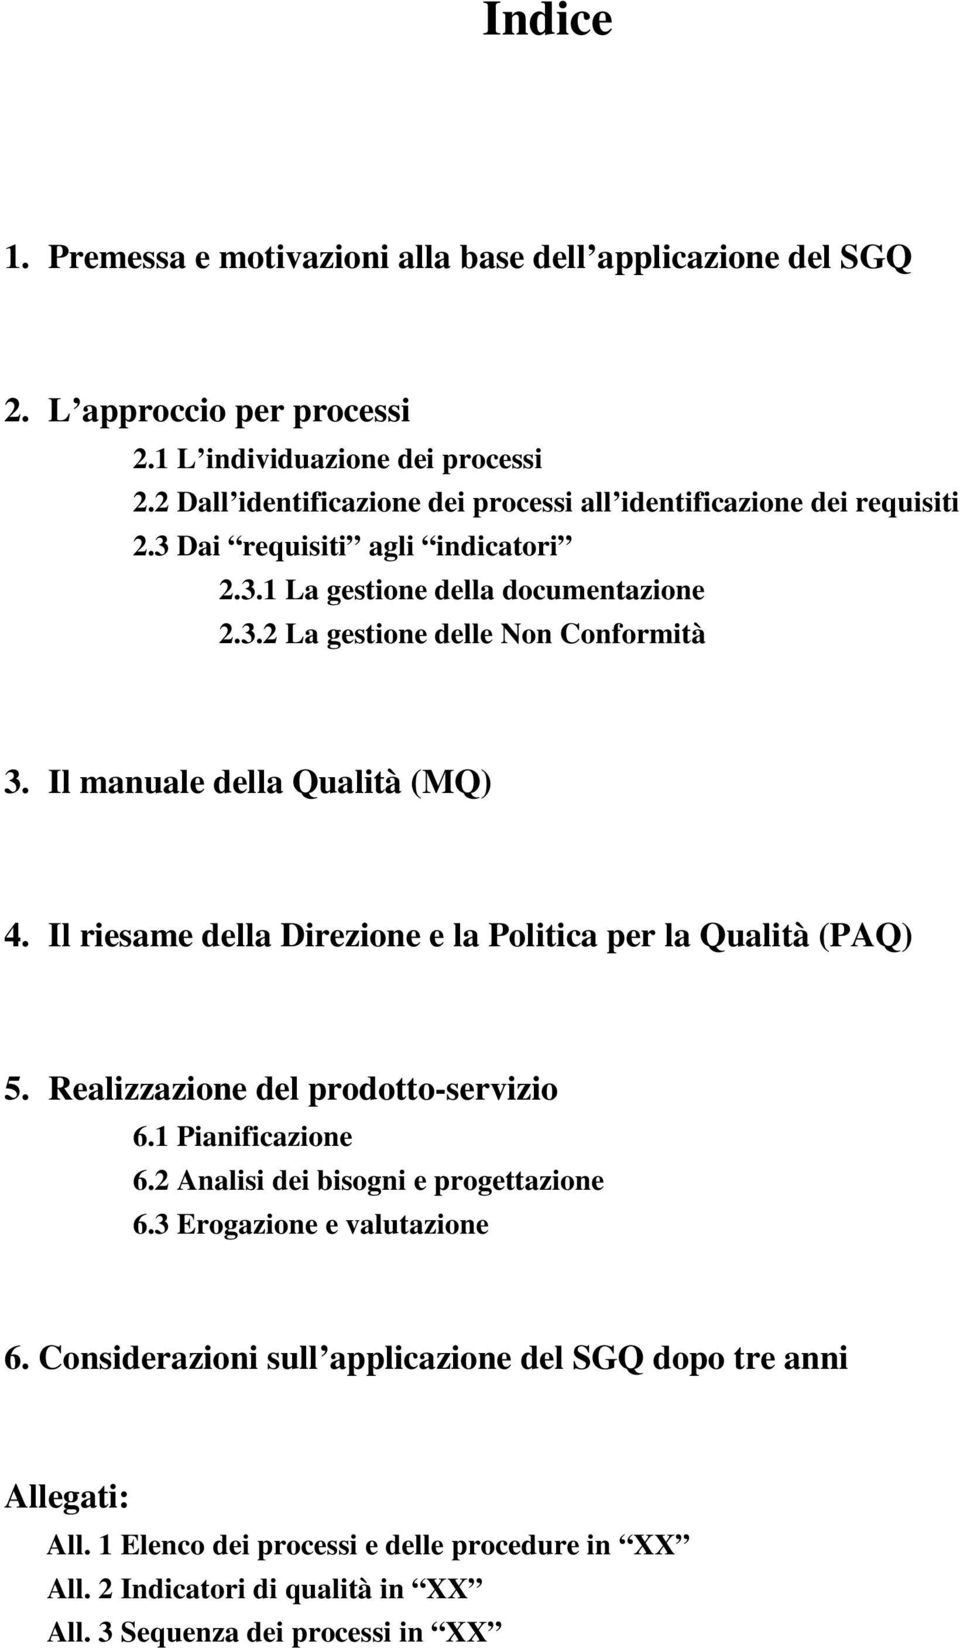 Il manuale della Qualità (MQ) 4. Il riesame della Direzione e la Politica per la Qualità (PAQ) 5. Realizzazione del prodotto-servizio 6.1 Pianificazione 6.